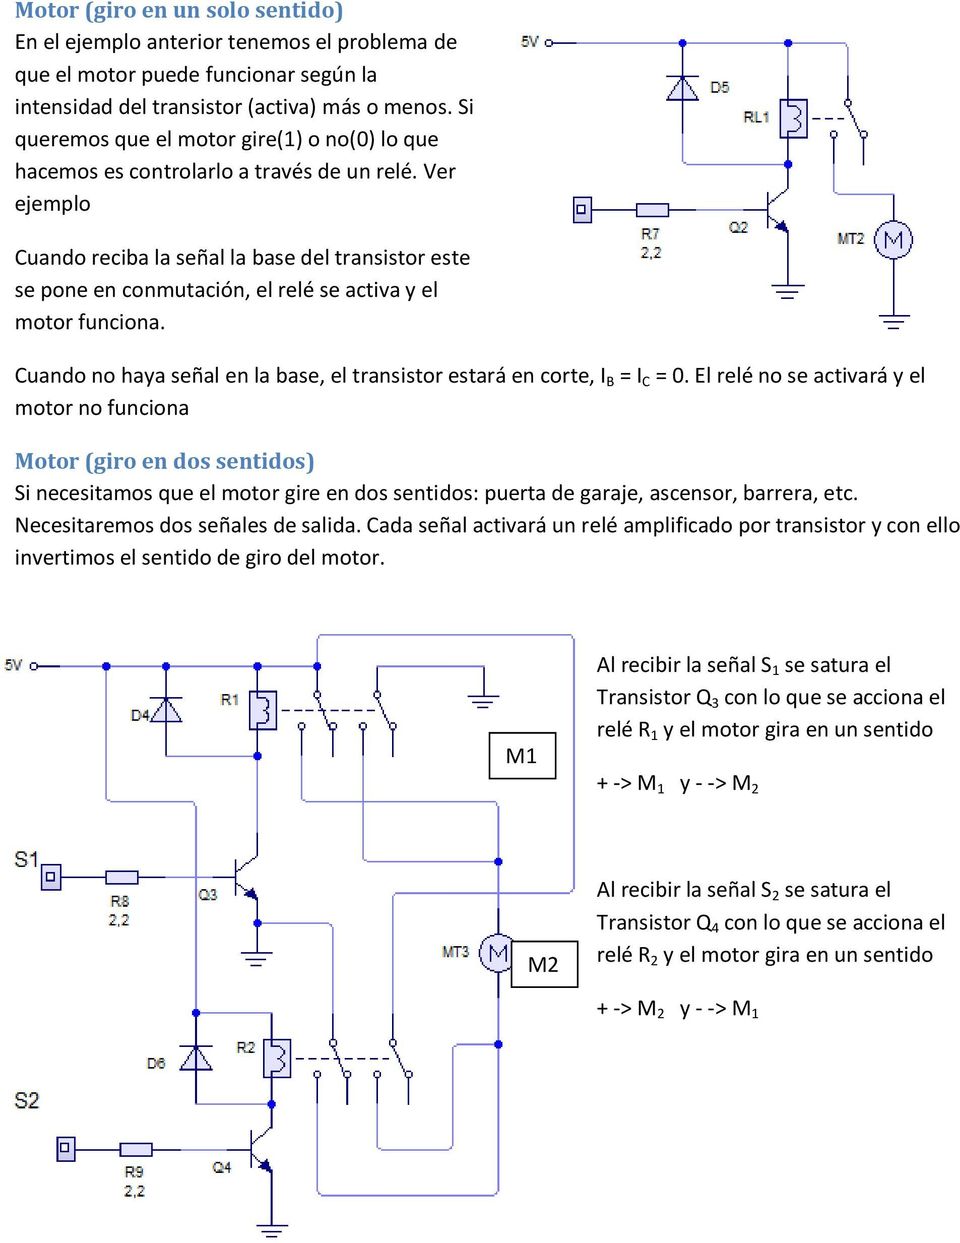 Ver ejemplo Cuando reciba la señal la base del transistor este se pone en conmutación, el relé se activa y el motor funciona.